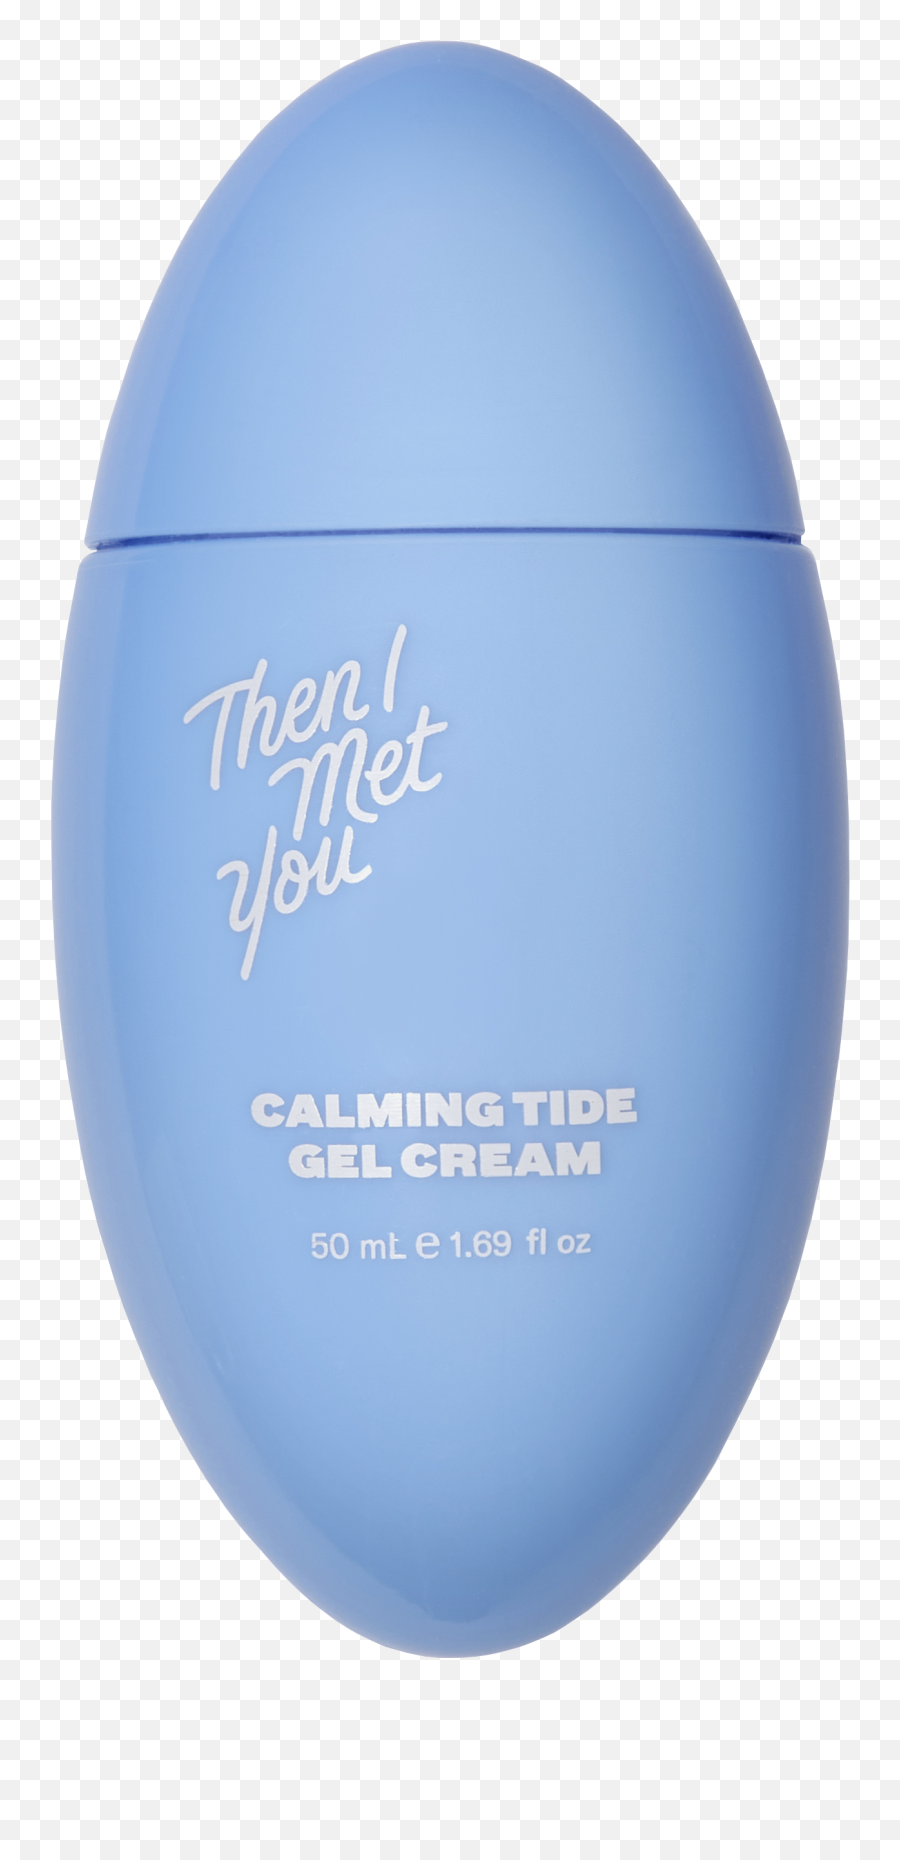 Calming Tide Gel Cream - Then I Met You Calming Tide Gel Cream Emoji,Emotions Gel Bag